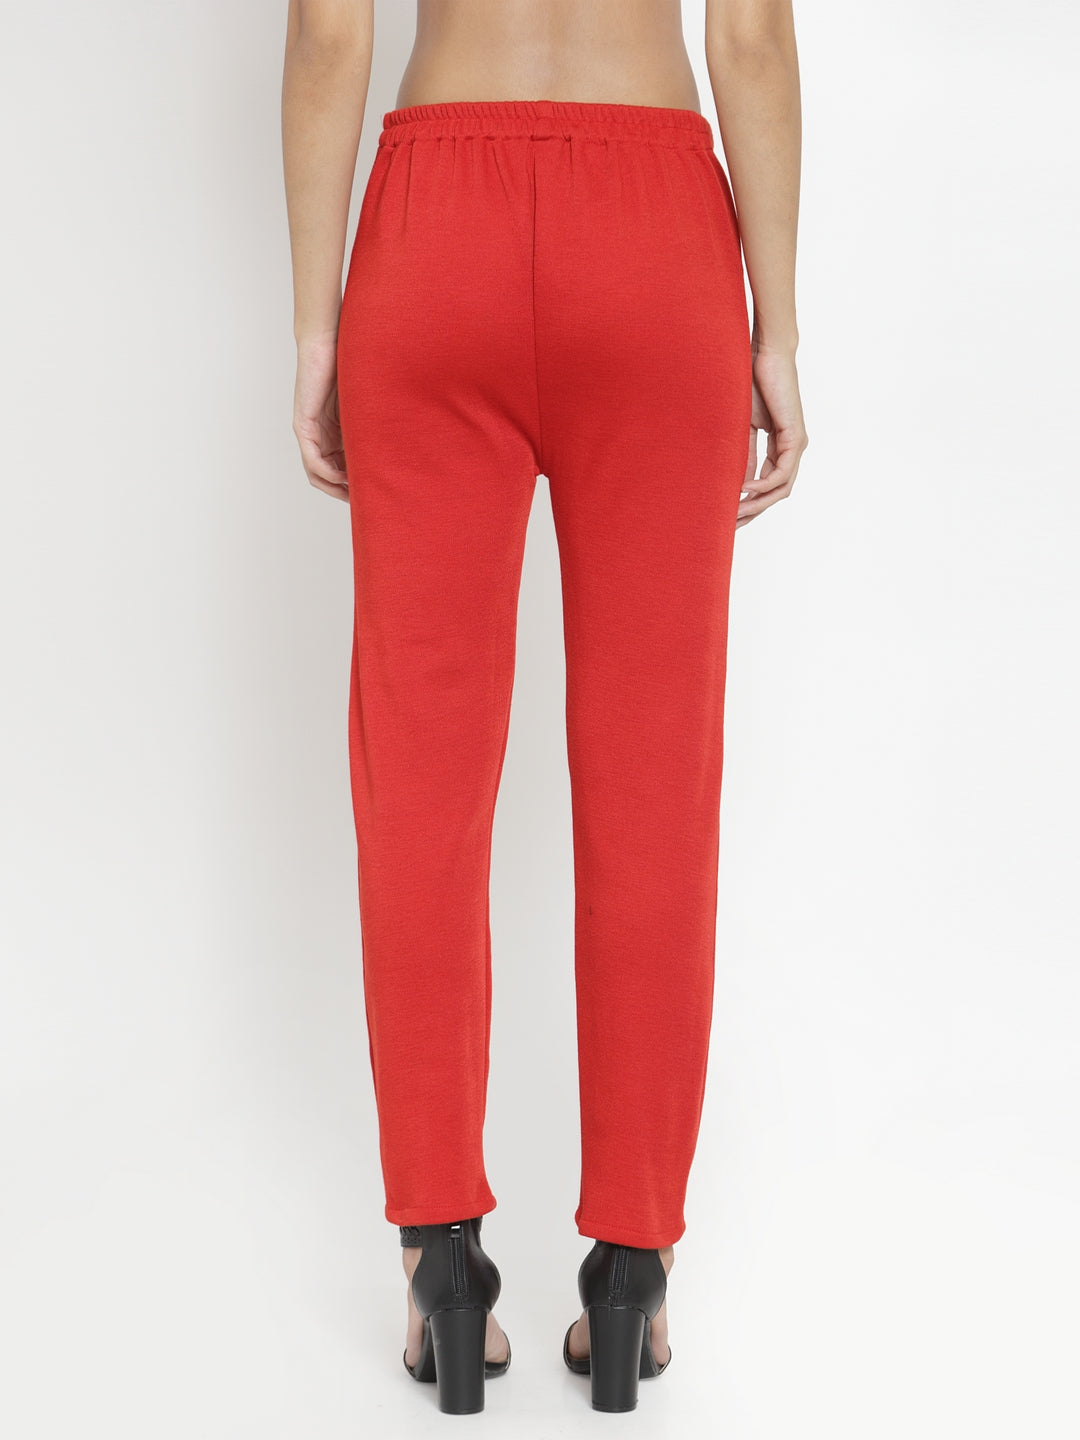 Women's Red Woolen Solid Pant - Wahe-NOOR